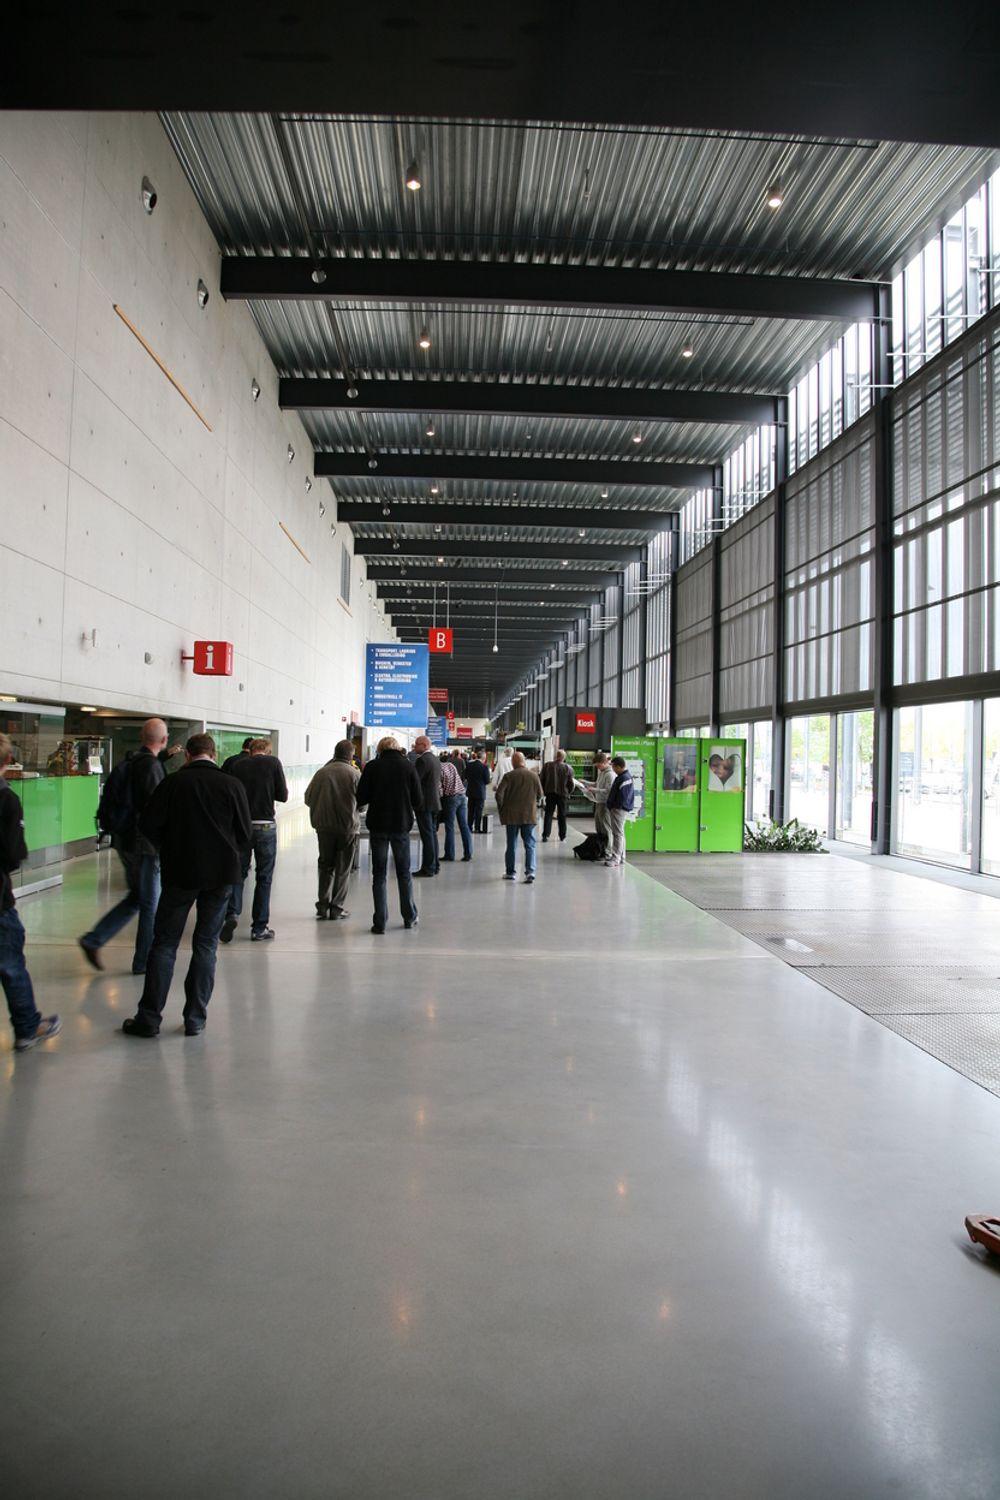 STORT: Den tekniske messen avholdes i de enorme lokalene til Norges Varemesse på Lillestrøm. Siden i fjor har messen utvidet med en ekstra hall.